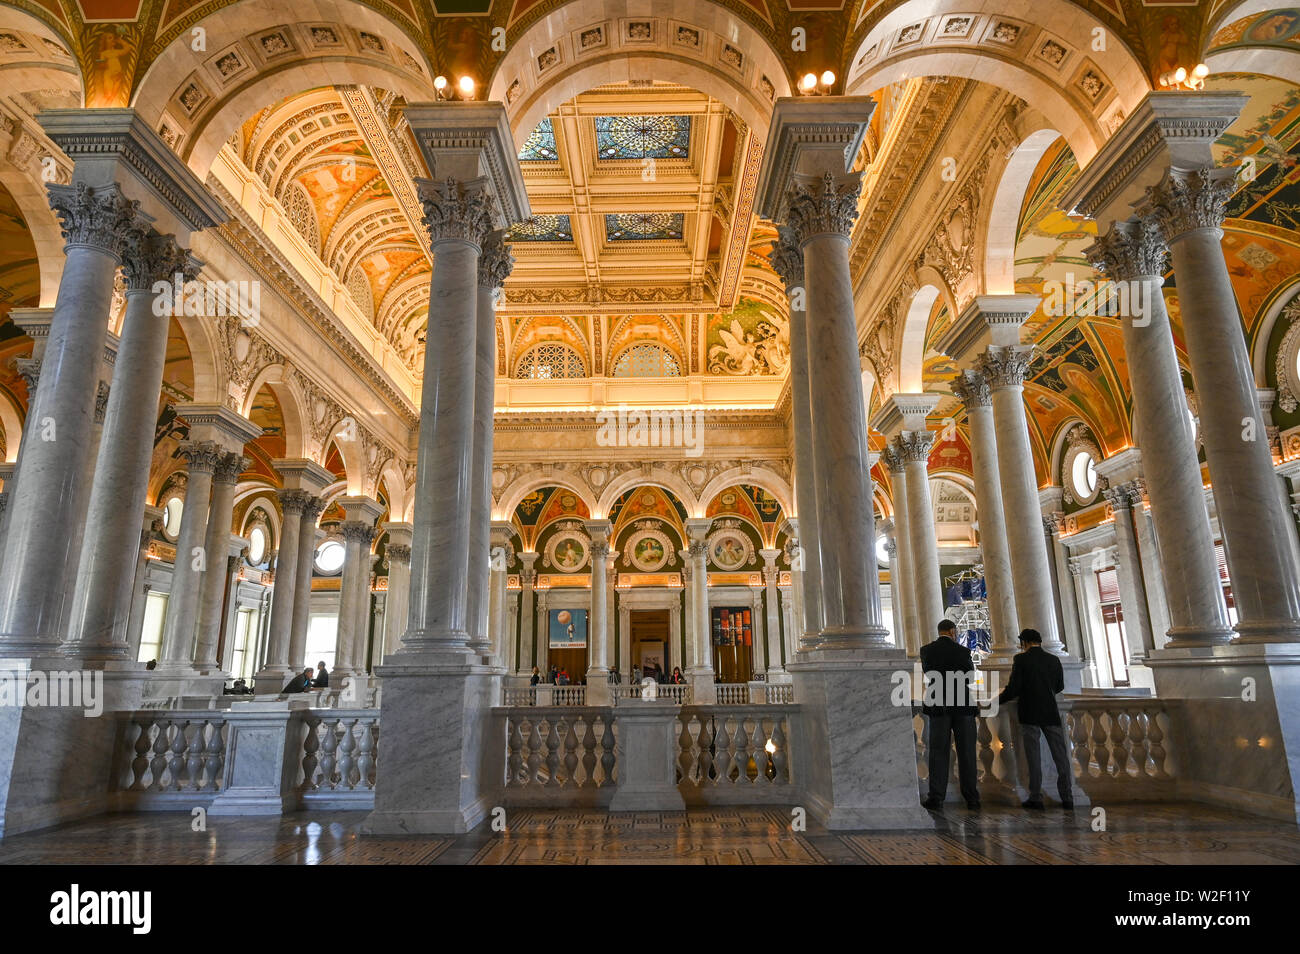 Hall d'entrée de la Bibliothèque du Congrès au Capitole. La bibliothèque abrite 167 millions d'articles dont plus de 30 millions de livres. Banque D'Images